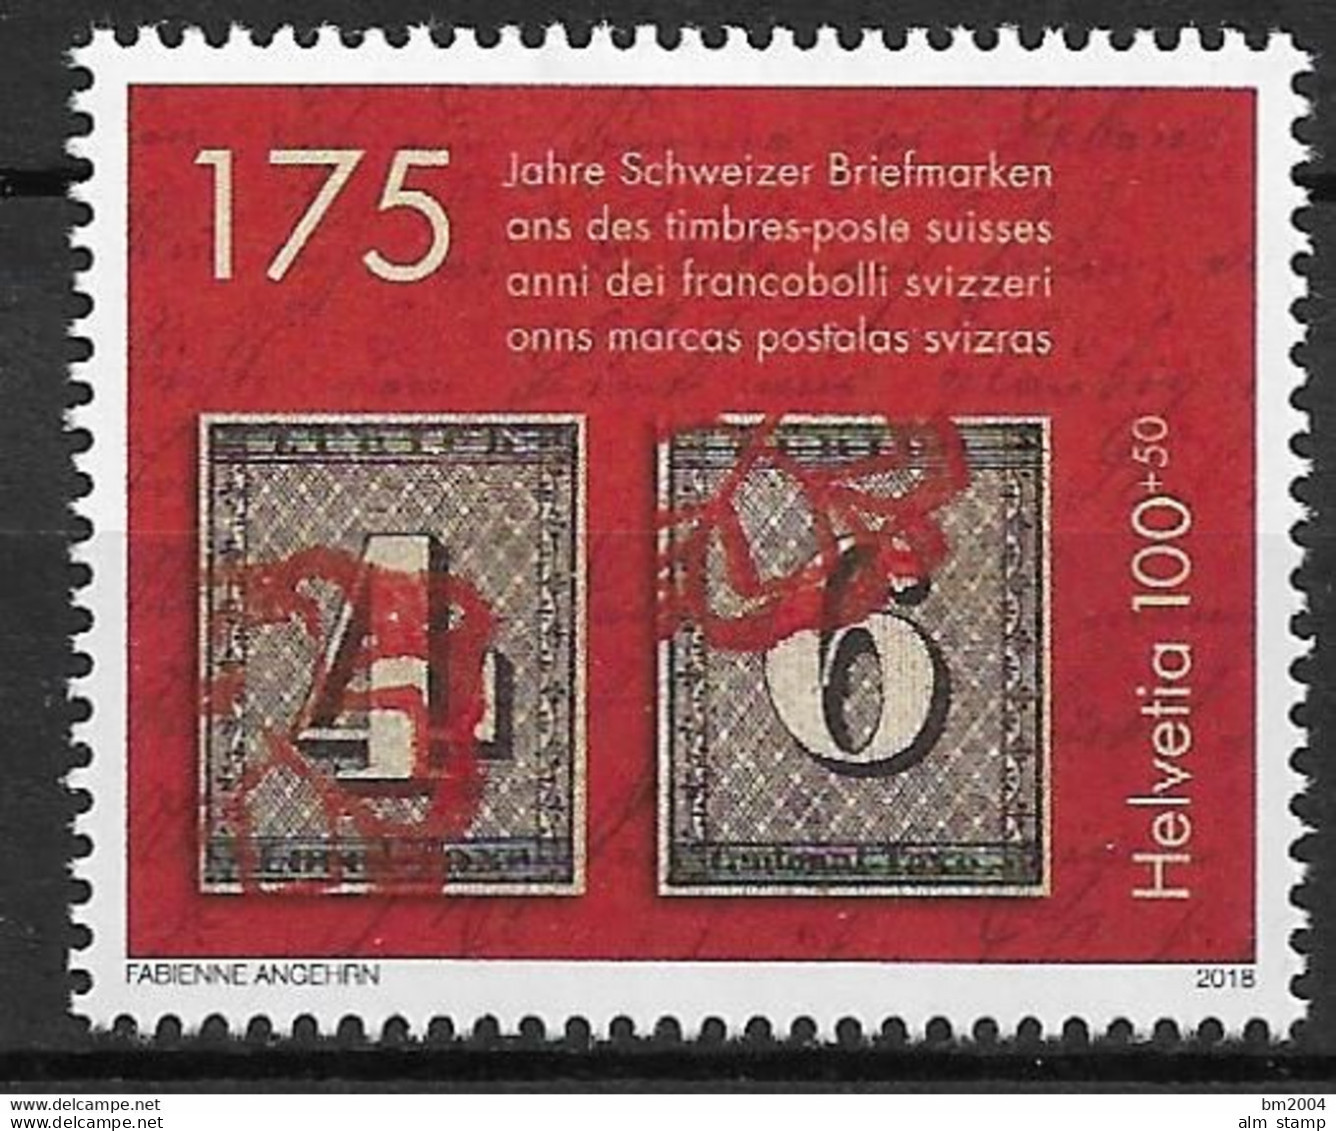 2018 Schweiz Mi. 2531 **MNH   175 Jahre Schweizer Briefmarken - Unused Stamps